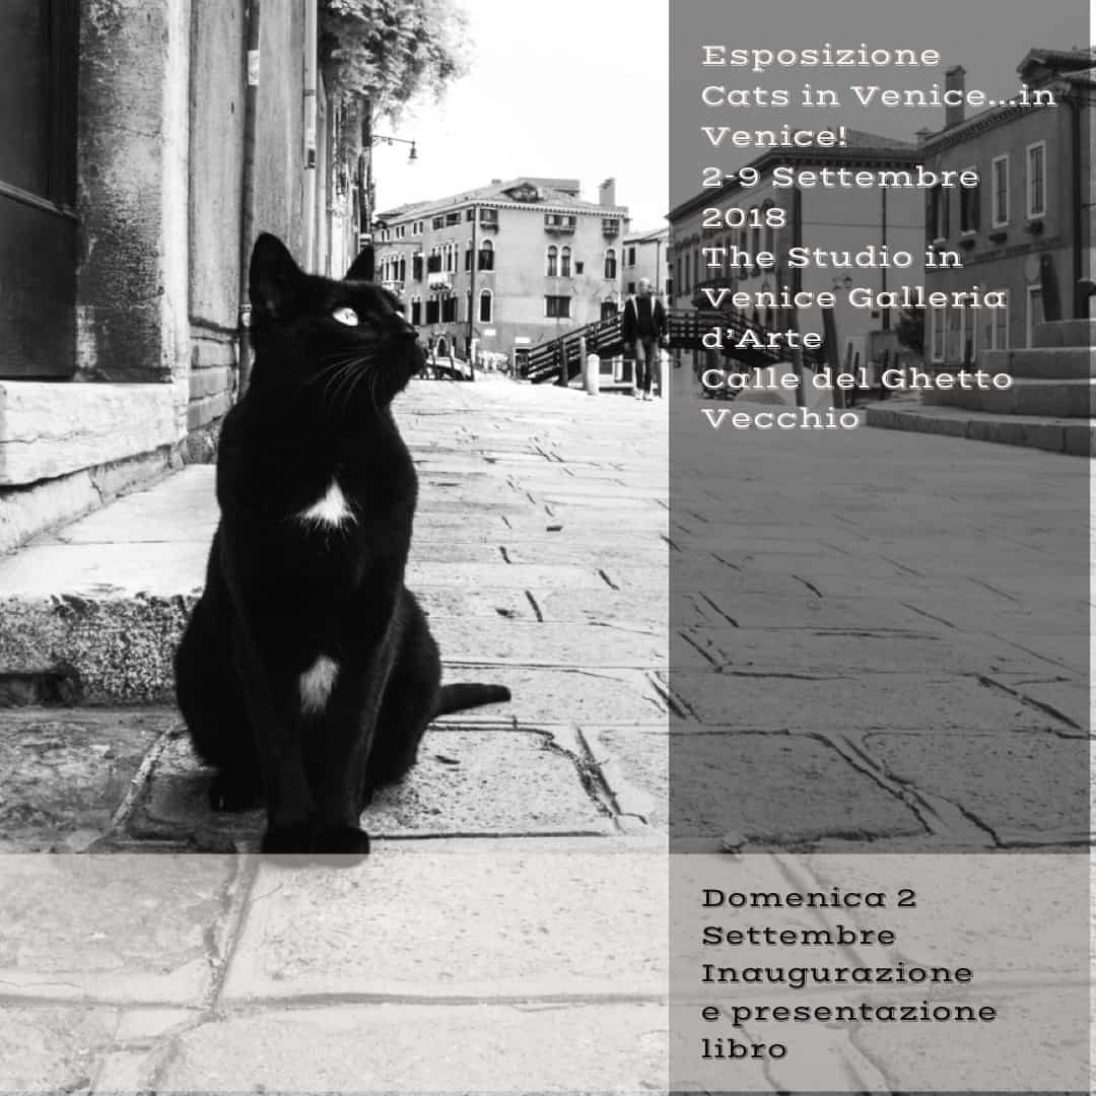 eventi - Esposizione fotografica Cats in Venice...in Venice